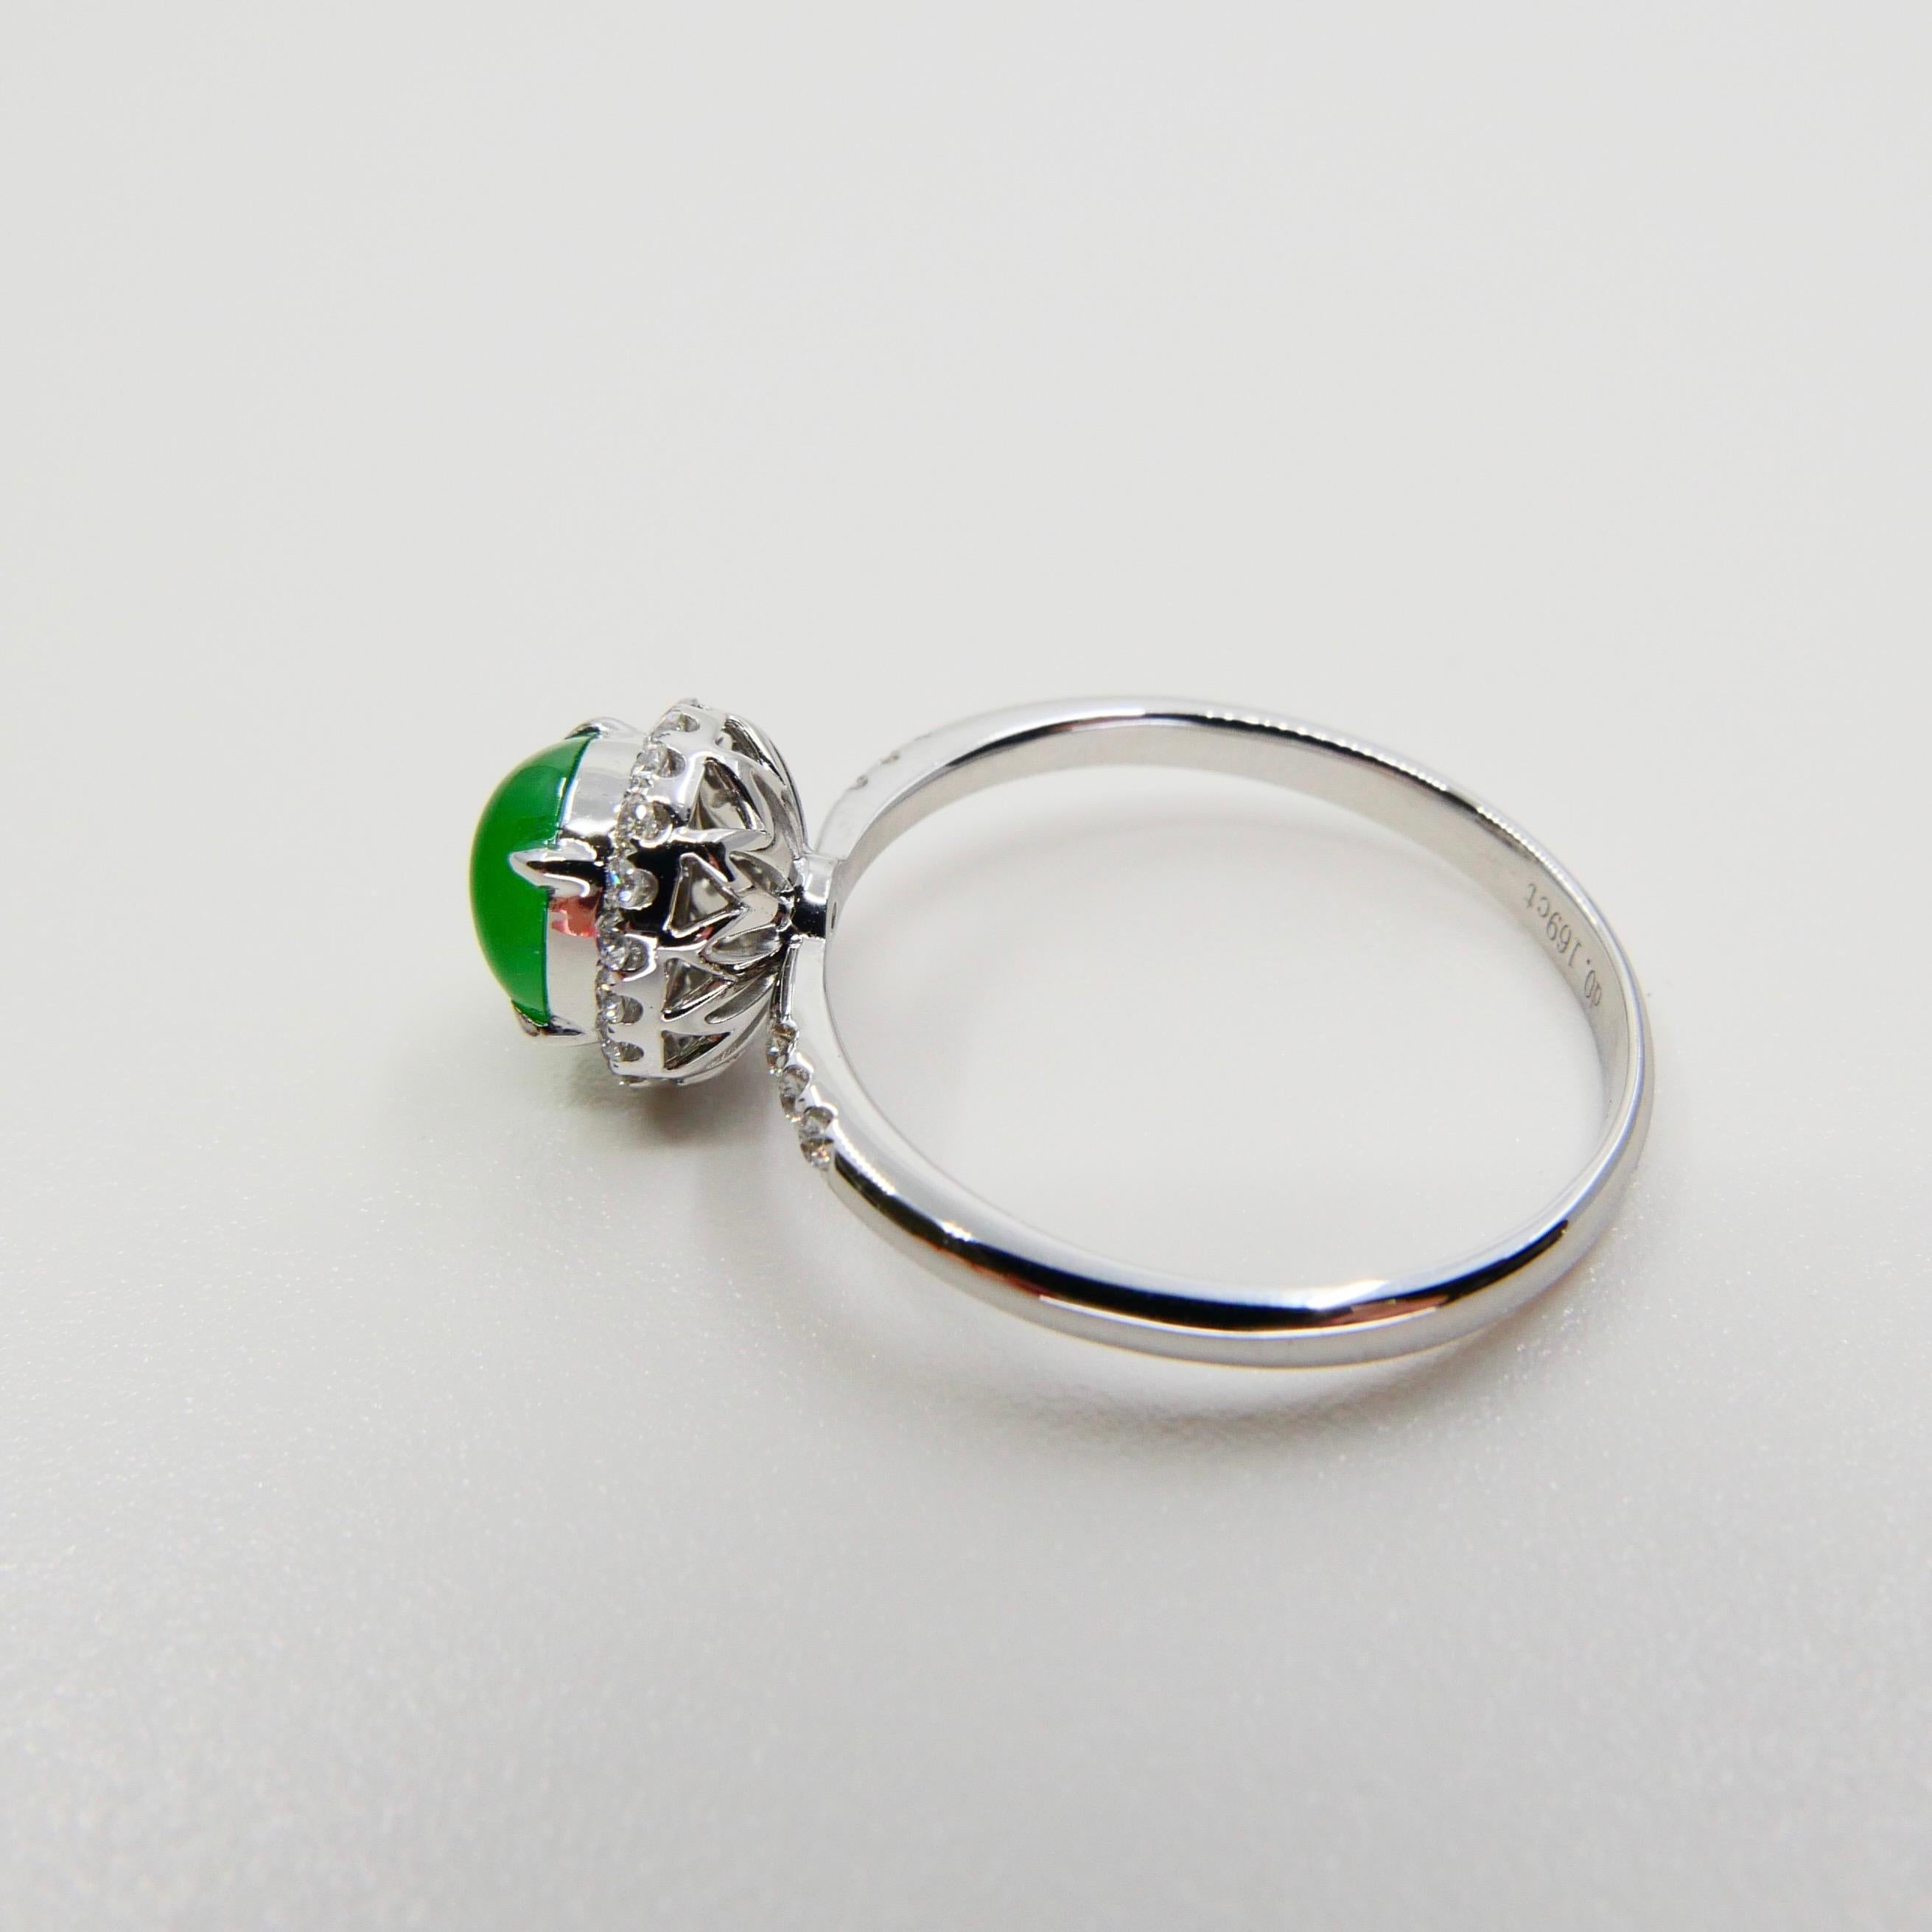 Zertifizierter Jade- und Diamantring, fast kaiserlich-grüne Farbe, Dainty, herrlich glänzend im Angebot 5